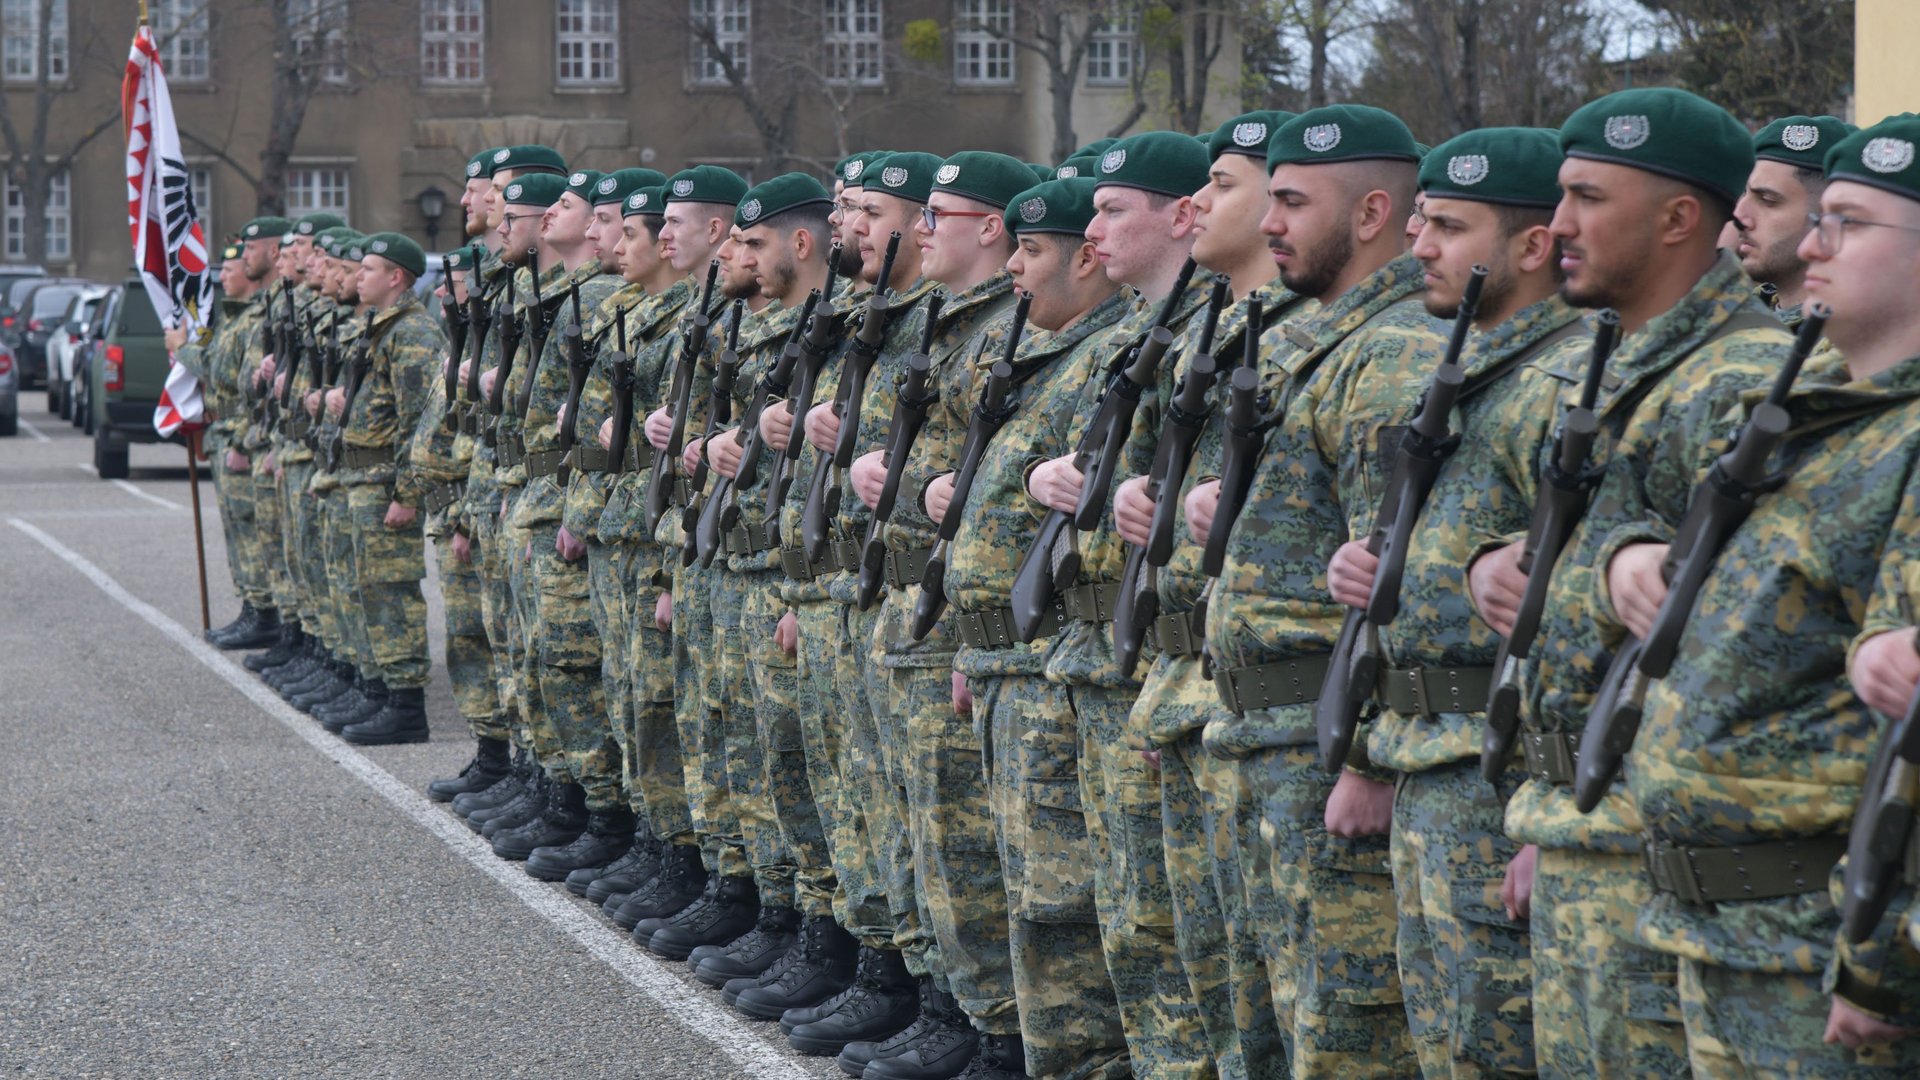 Die Rekruten am Antreteplatz der Maria-Theresien-Kaserne.